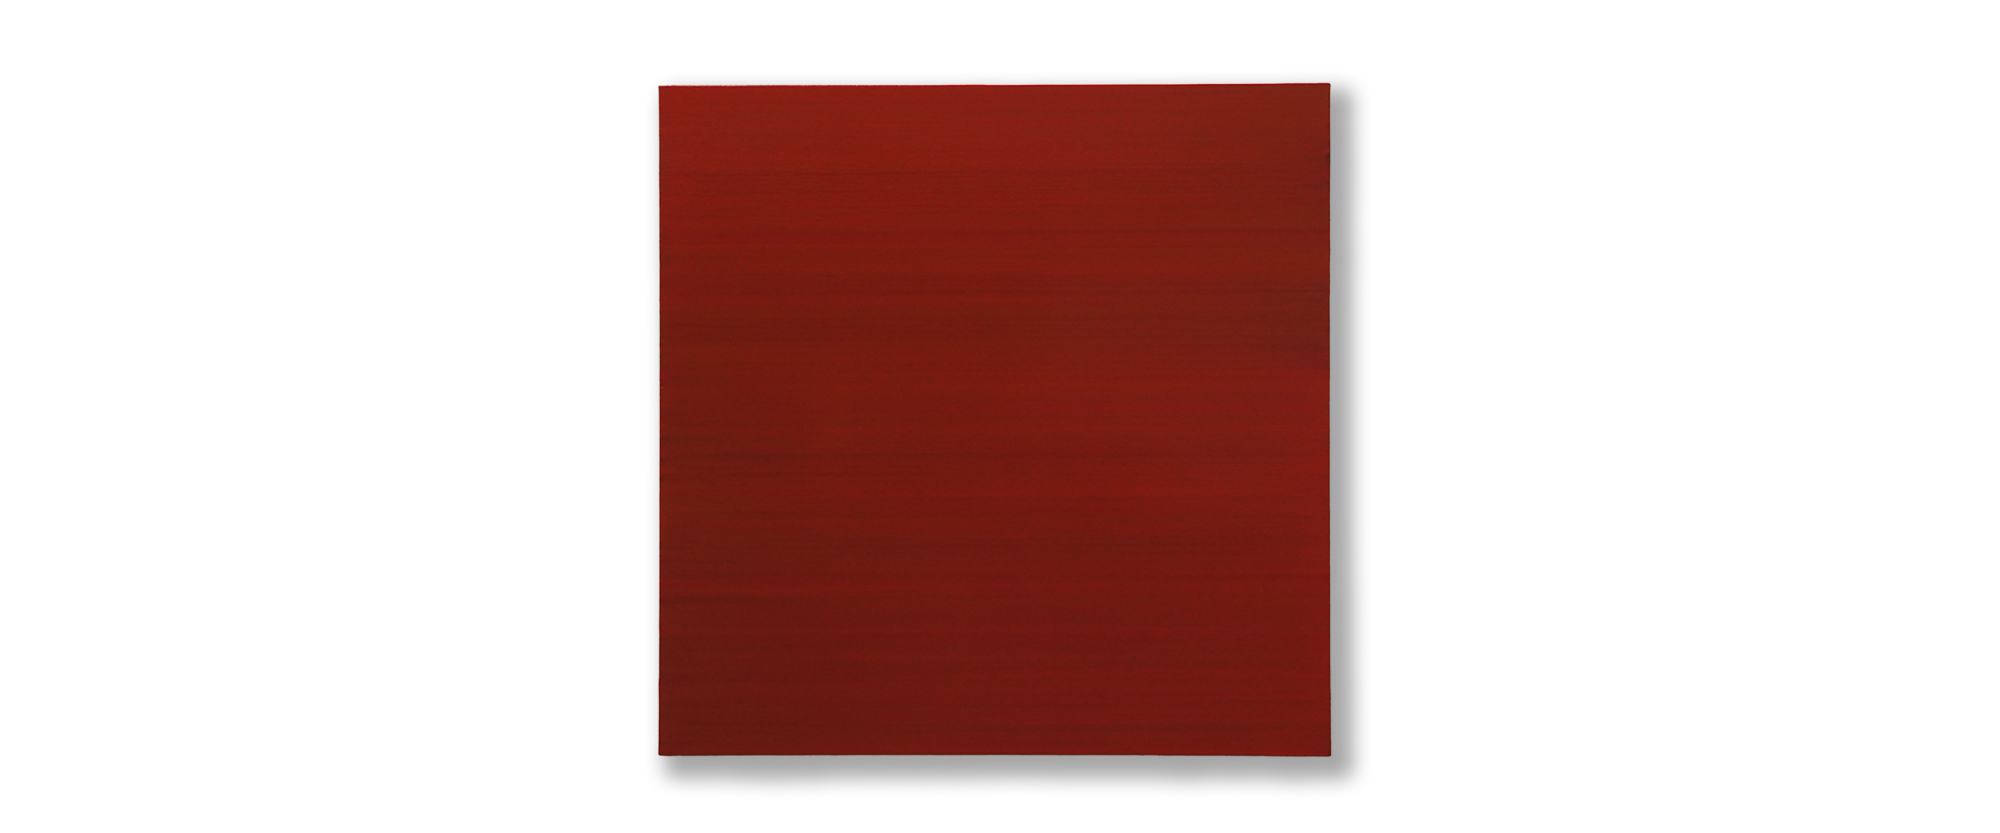 Cave. Red Earth - 2017, Öl auf Leinwand, 85 x 85 cm